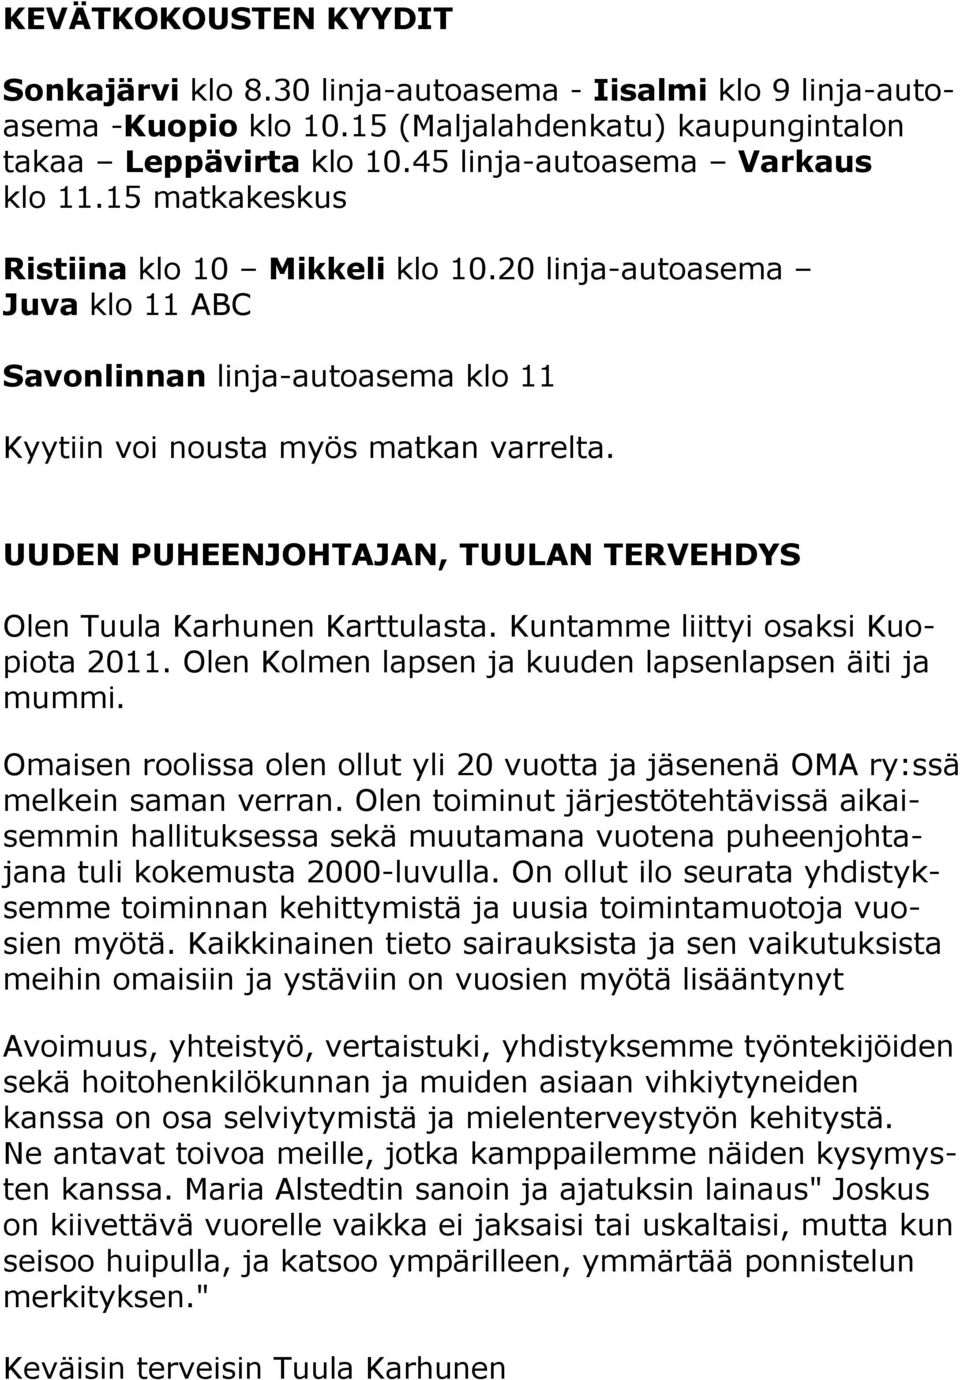 UUDEN PUHEENJOHTAJAN, TUULAN TERVEHDYS Olen Tuula Karhunen Karttulasta. Kuntamme liittyi osaksi Kuopiota 2011. Olen Kolmen lapsen ja kuuden lapsenlapsen äiti ja mummi.